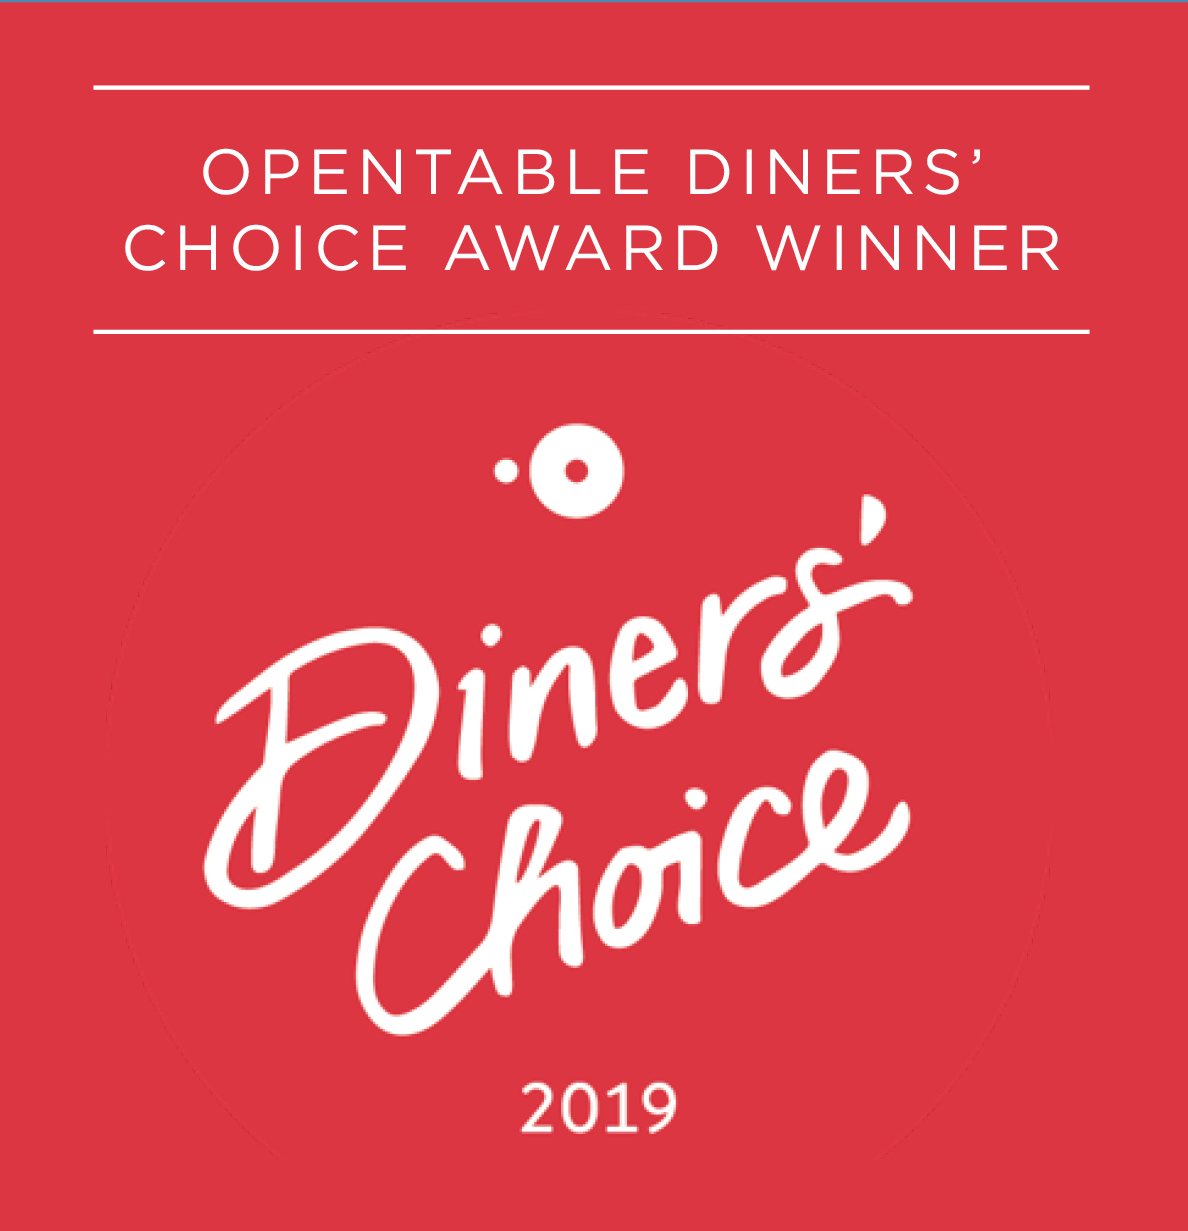 Opentable Diner's Choice Award Winner 2019